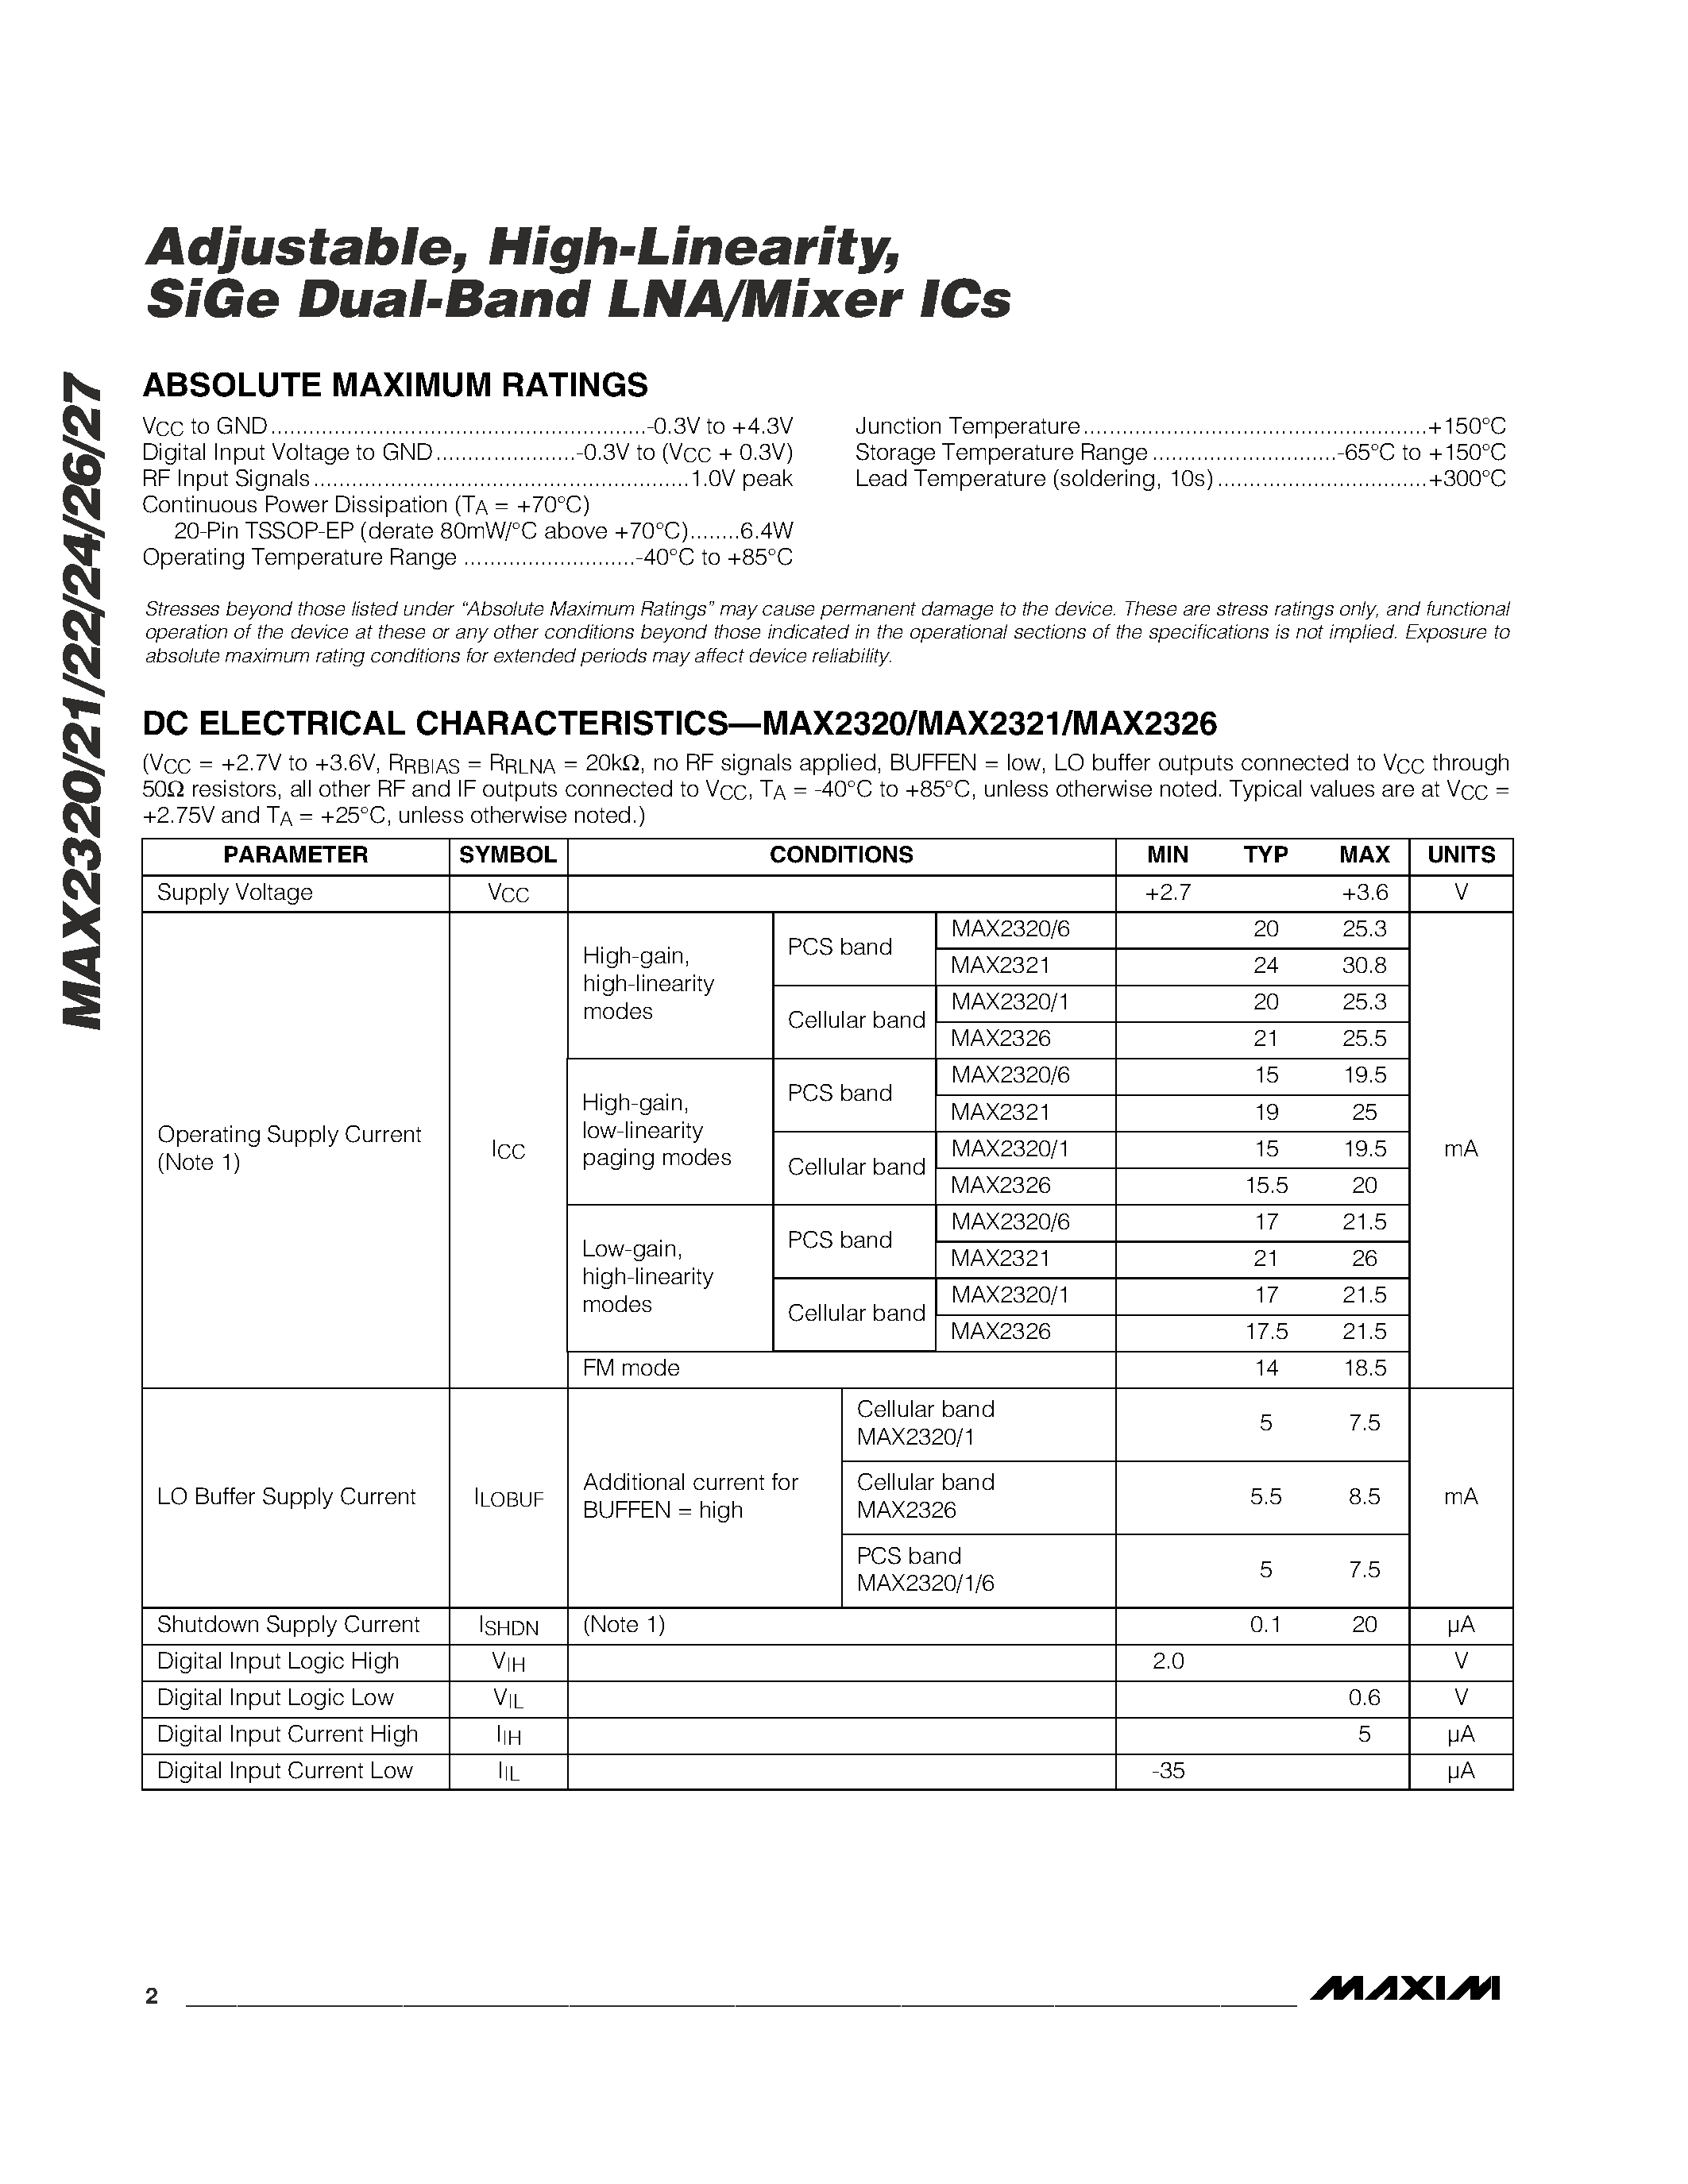 Даташит MAX2320 - Adjustable / High-Linearity / SiGe Dual-Band LNA/Mixer ICs страница 2